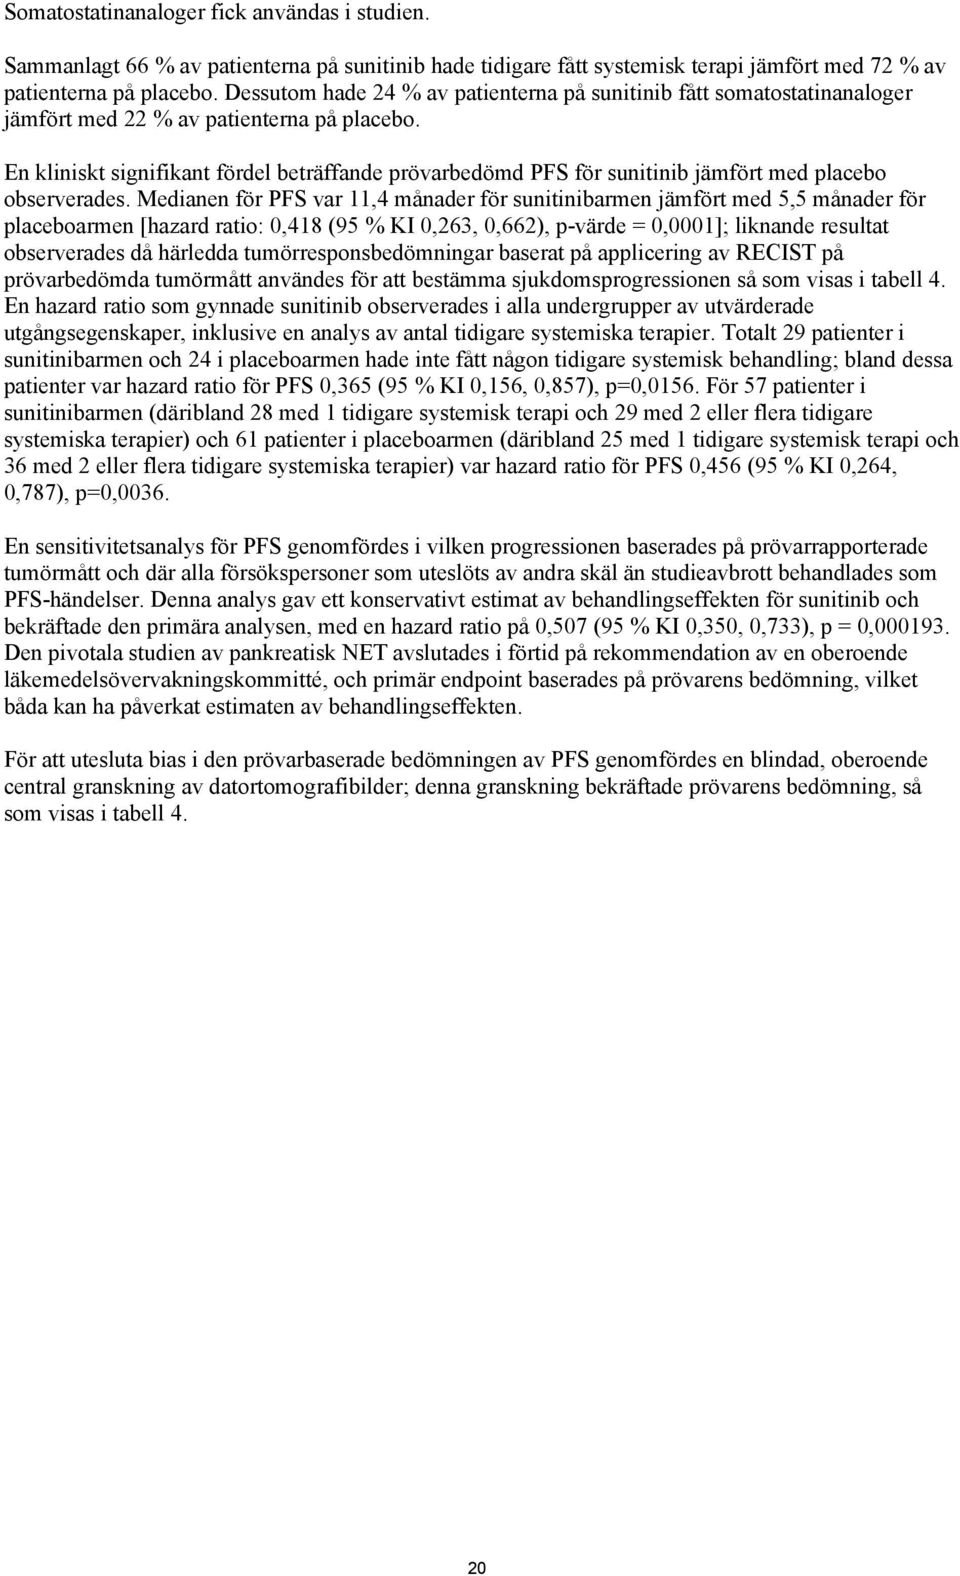 En kliniskt signifikant fördel beträffande prövarbedömd PFS för sunitinib jämfört med placebo observerades.